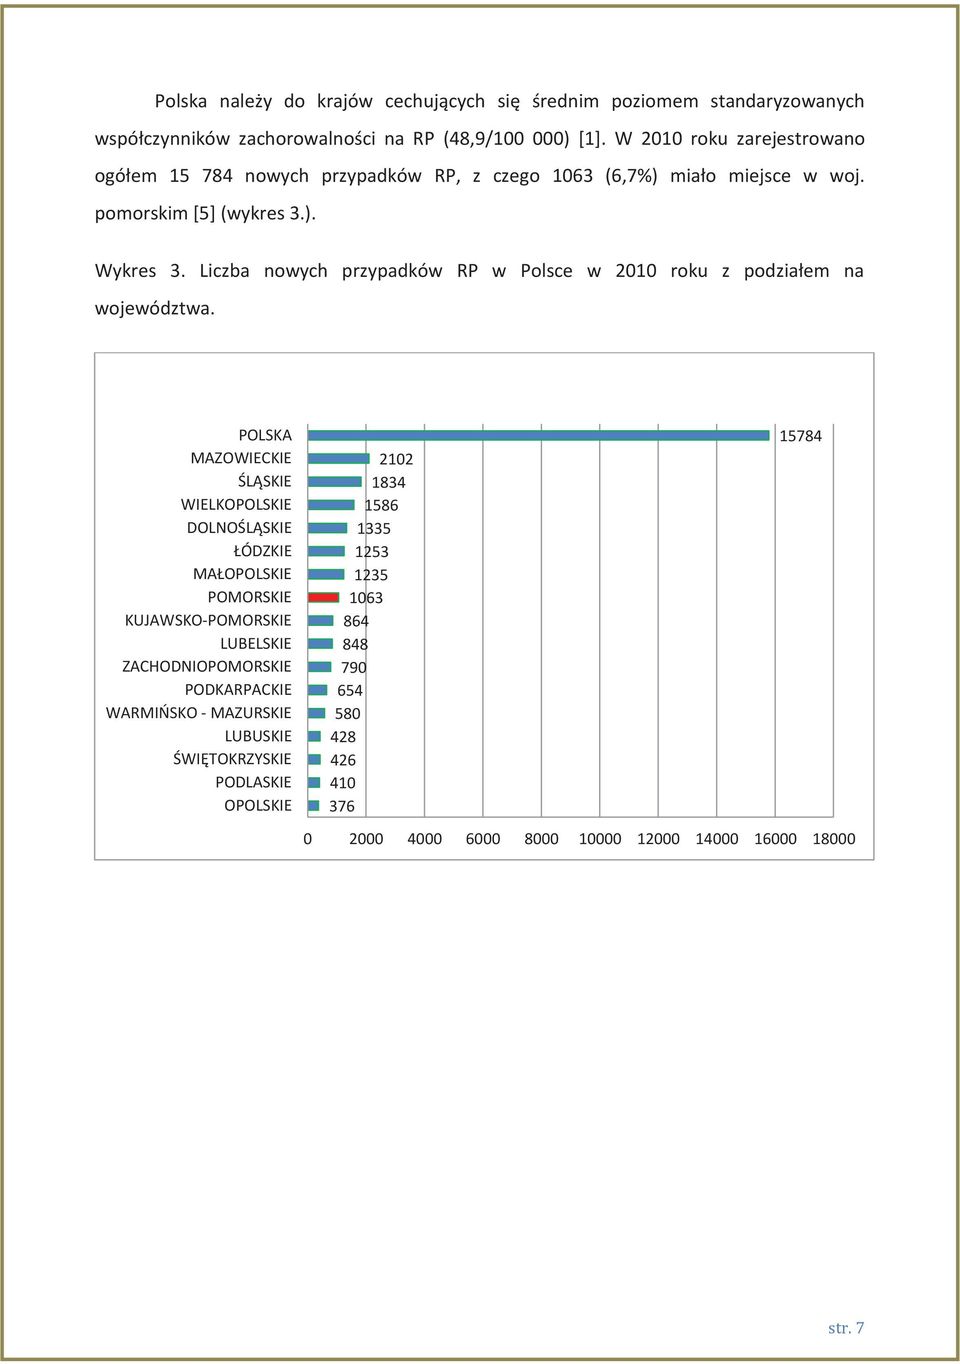 Liczba nowych przypadków RP w Polsce w 2010 roku z podziałem na województwa.